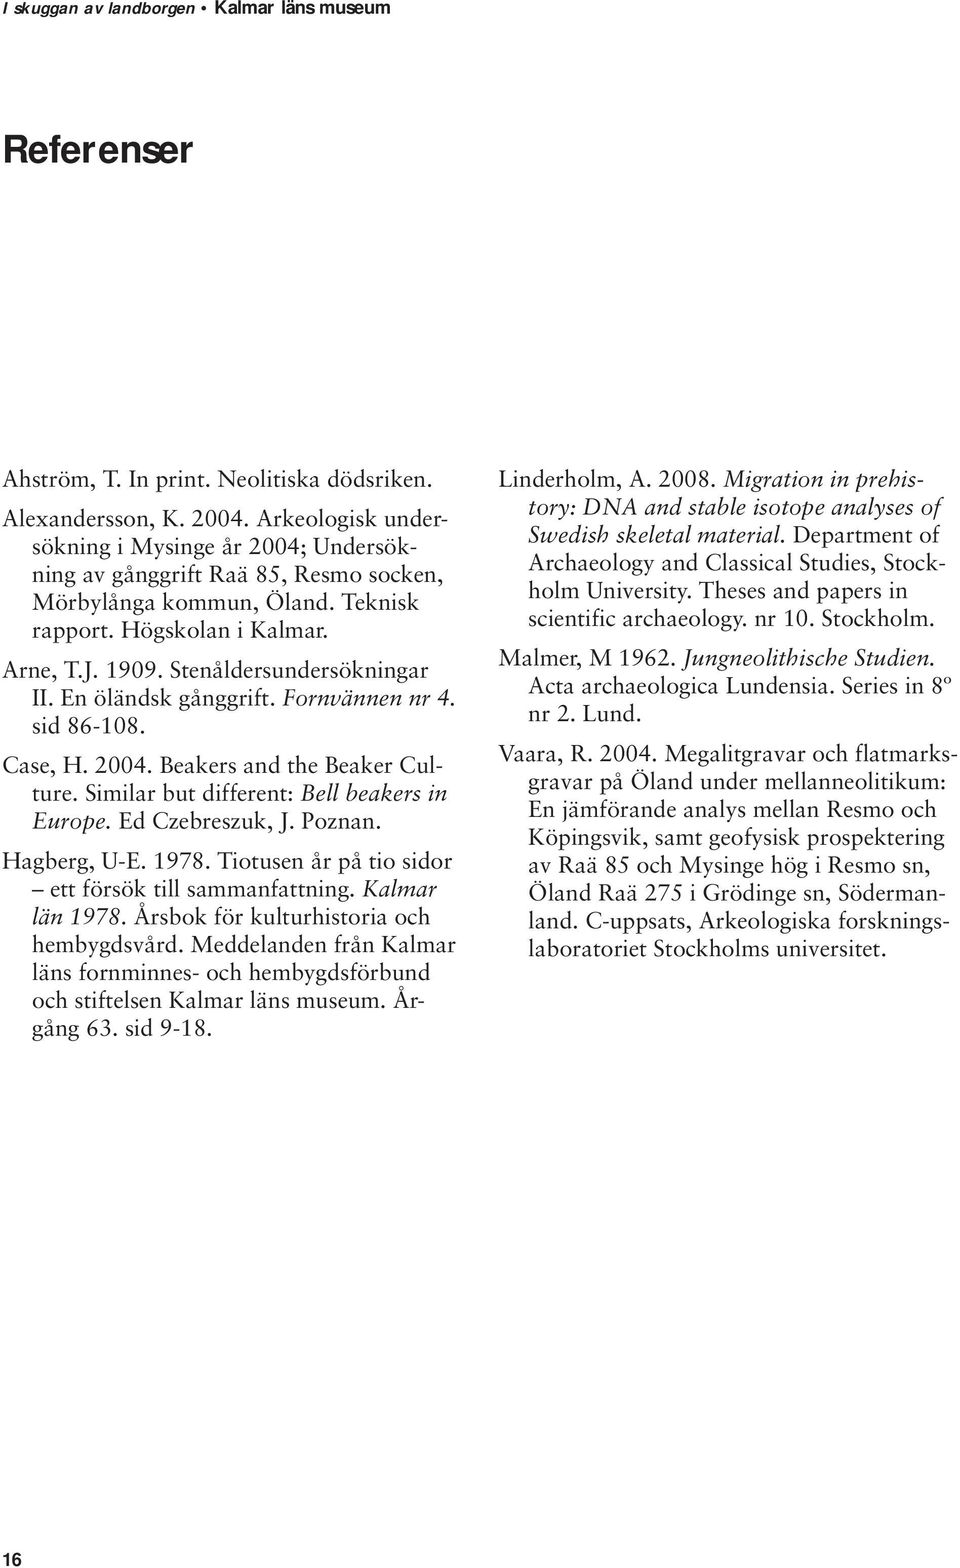 Similar but different: Bell beakers in Europe. Ed Czebreszuk, J. Poznan. Hagberg, U-E. 1978. Tiotusen år på tio sidor ett försök till sammanfattning. Kalmar län 1978.